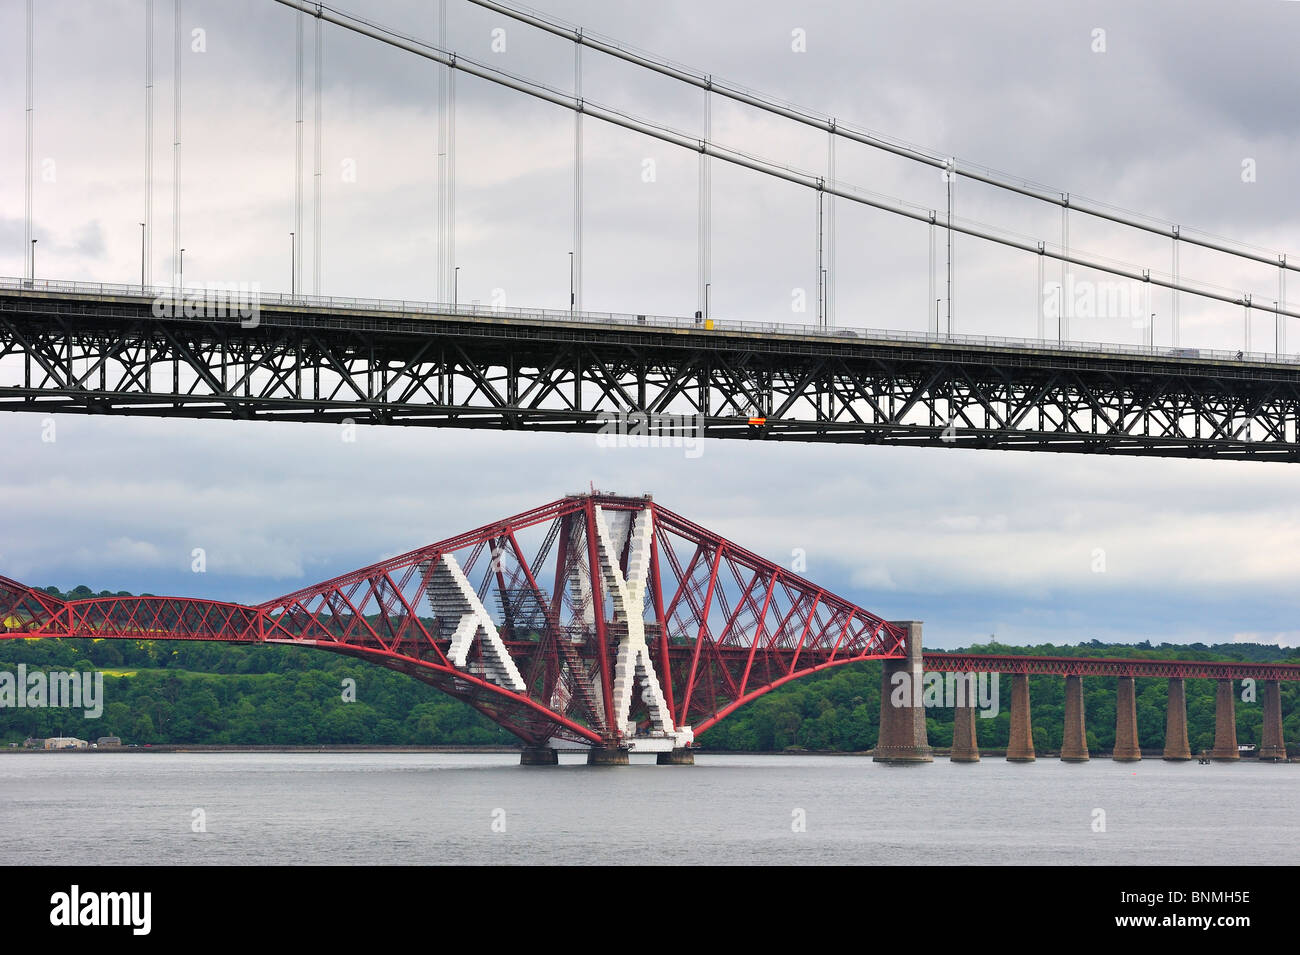 The Forth Road Bridge and Forth Railway Bridge / Forth Rail Bridge over the Firth of Forth near Edinburgh, Scotland, UK Stock Photo